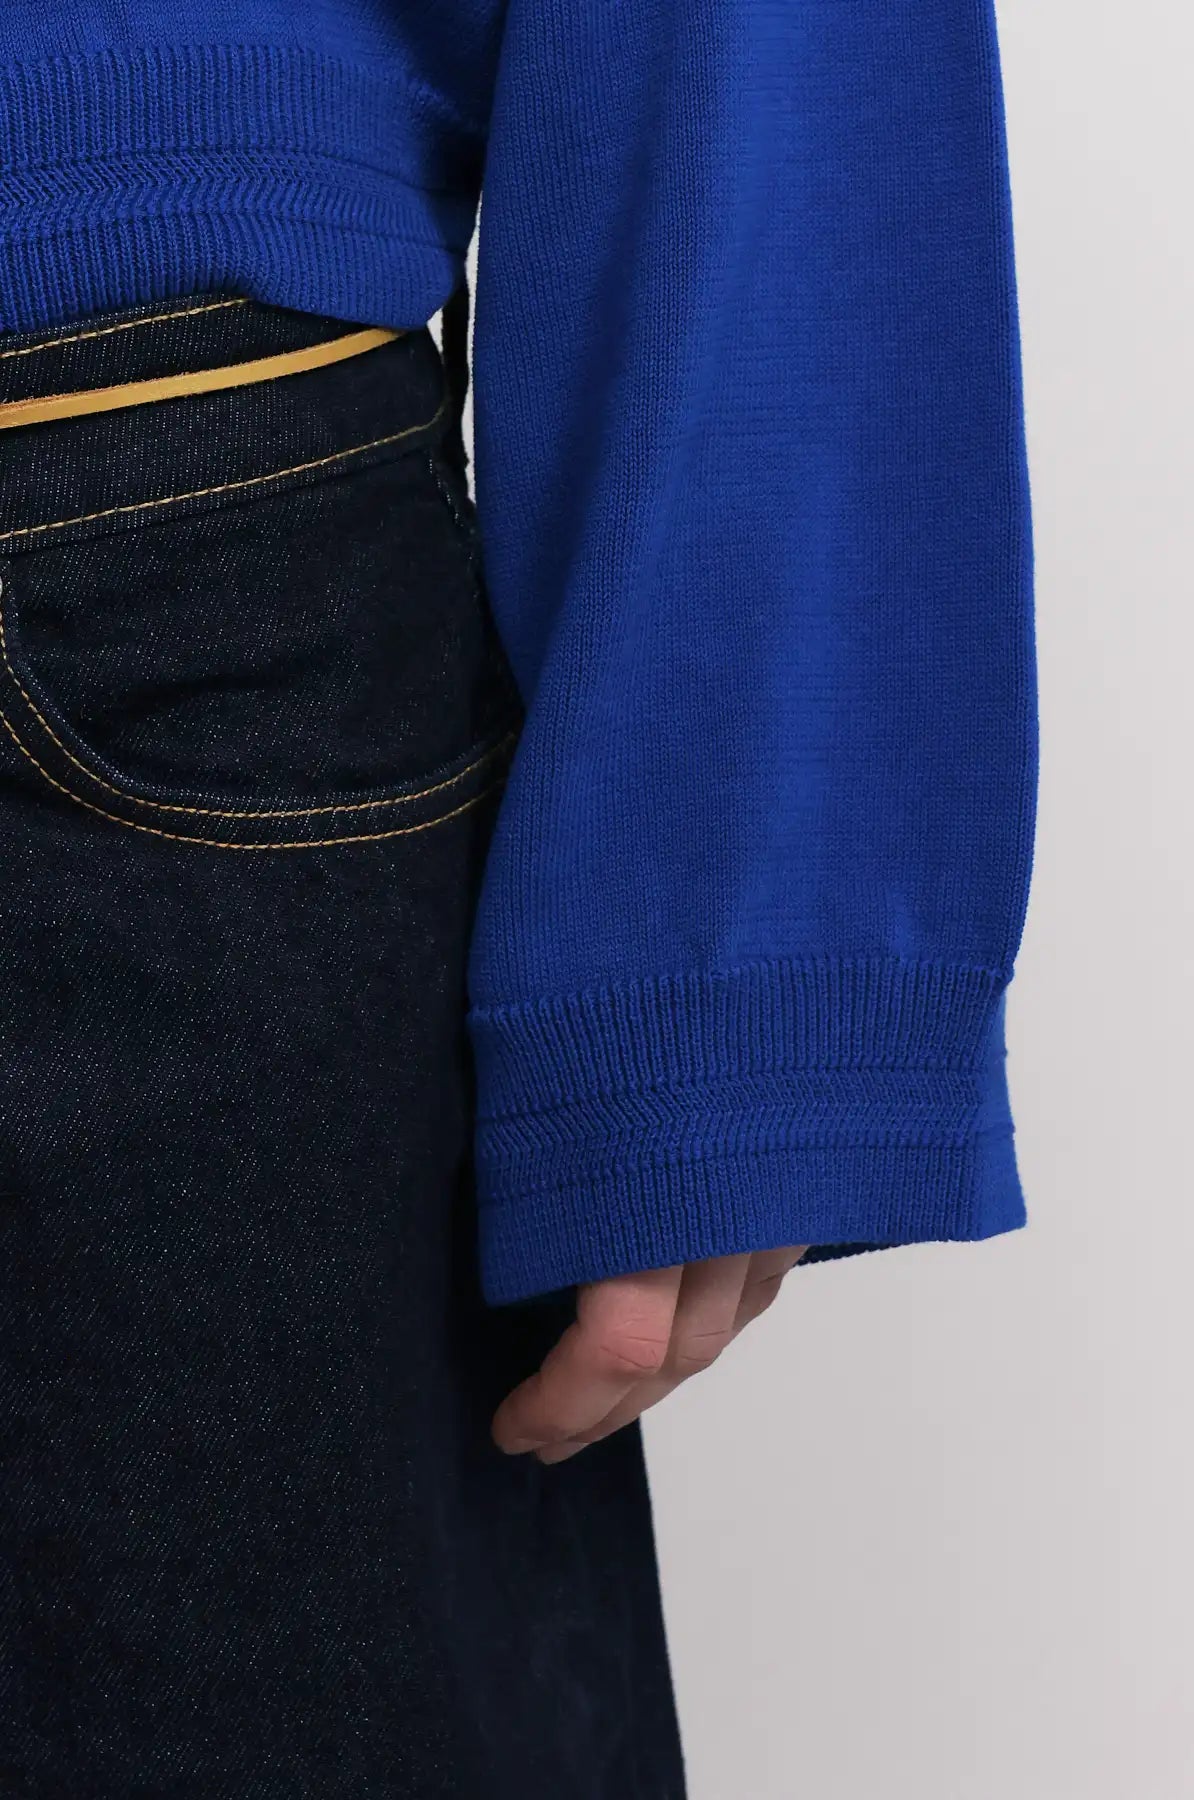 Produit maille Loucine couleur bleu tricoté par la marque Parisienne Tricots Jean Marc 1972.